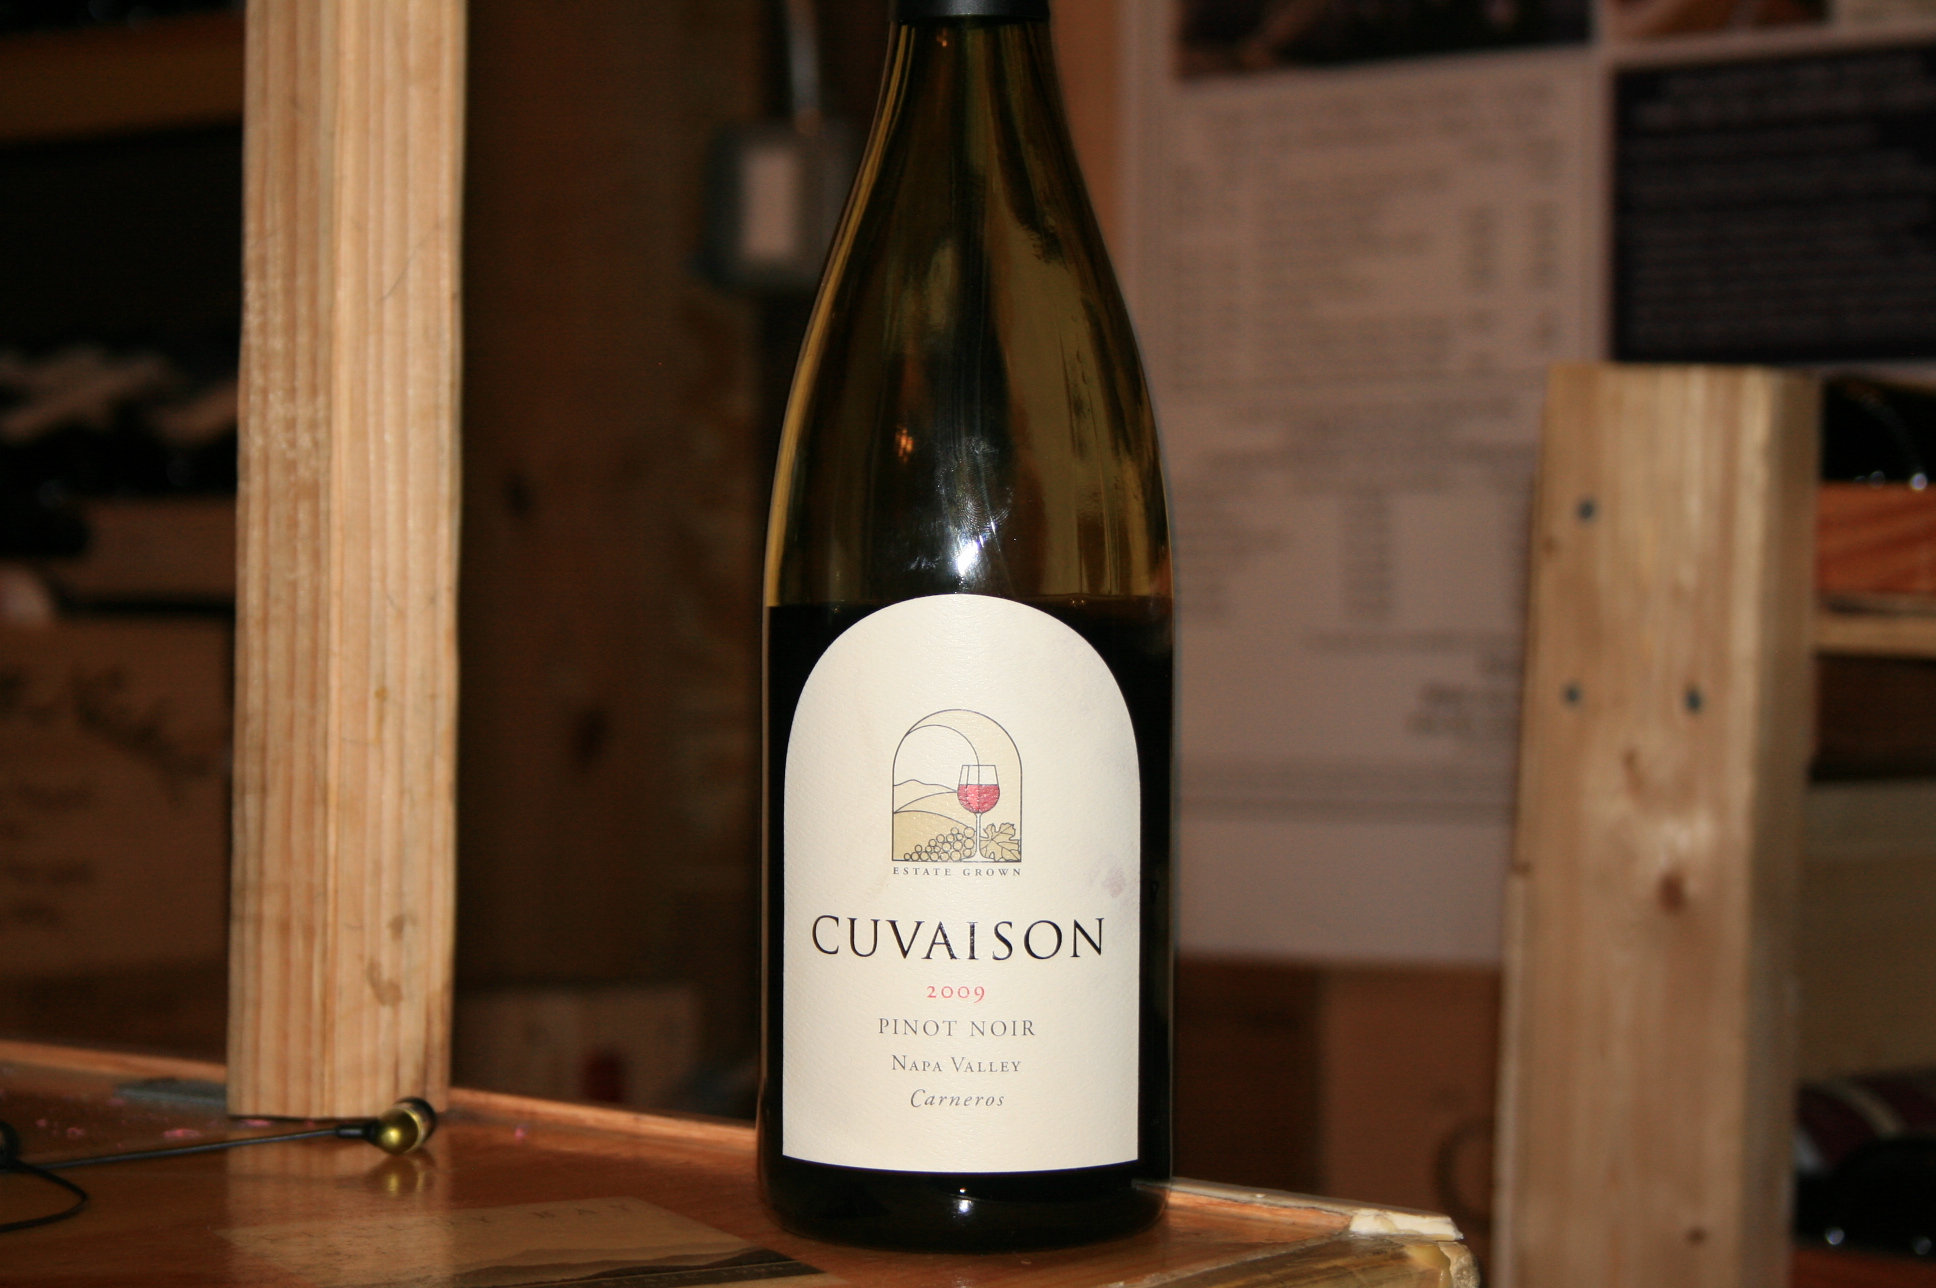 2012 Cuvaison Estate Pinot Noir Carneros - click image for full description